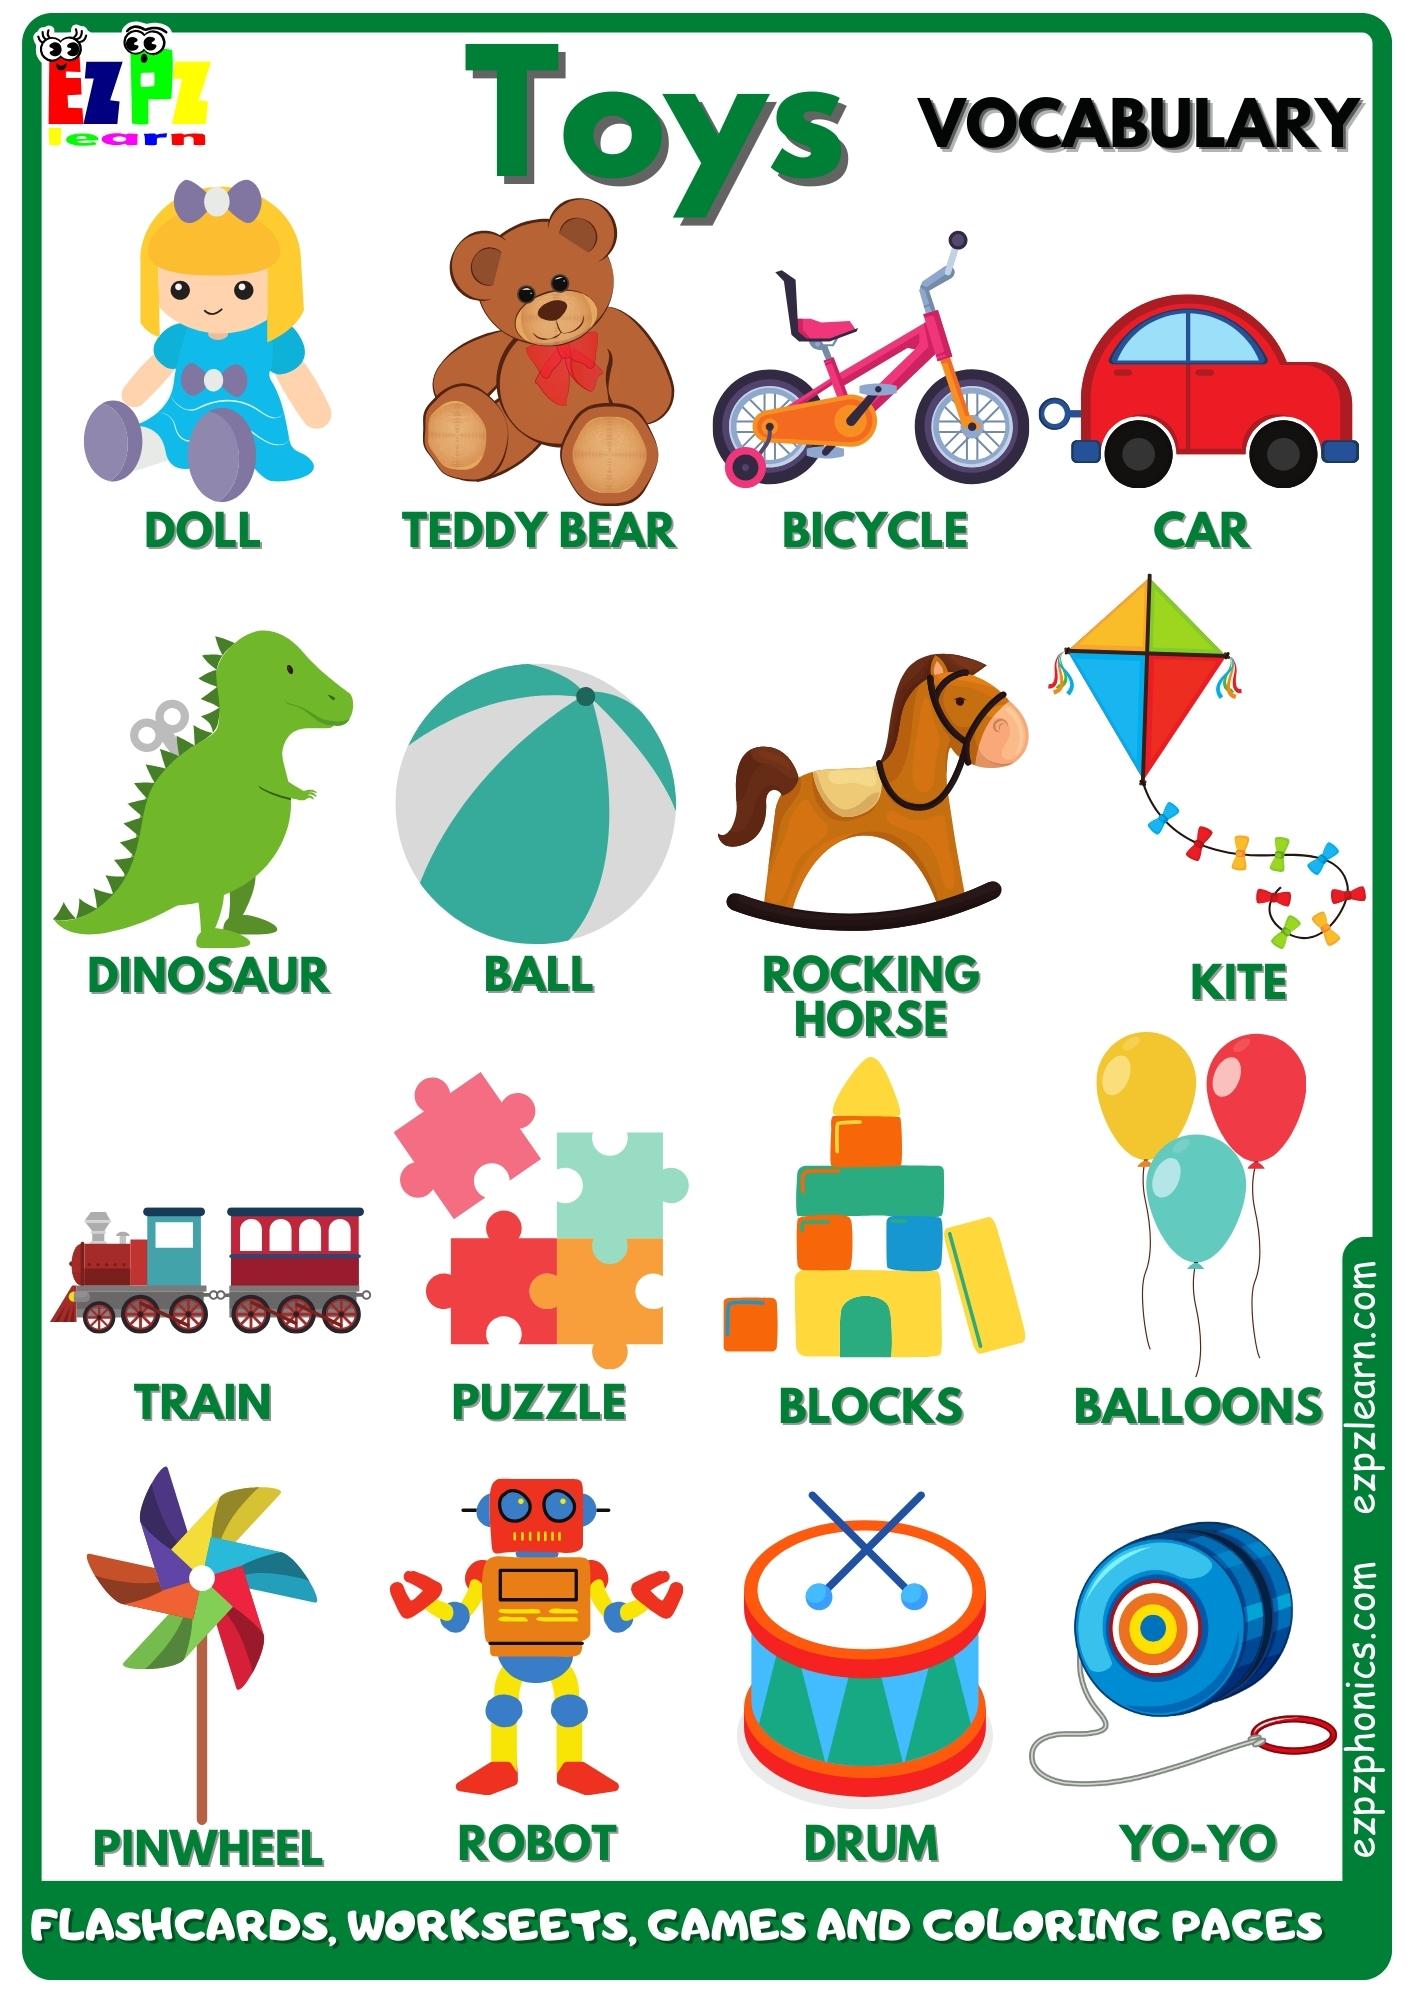 Toys Vocabulary Free English Vocabulary Flashcards, Worksheets